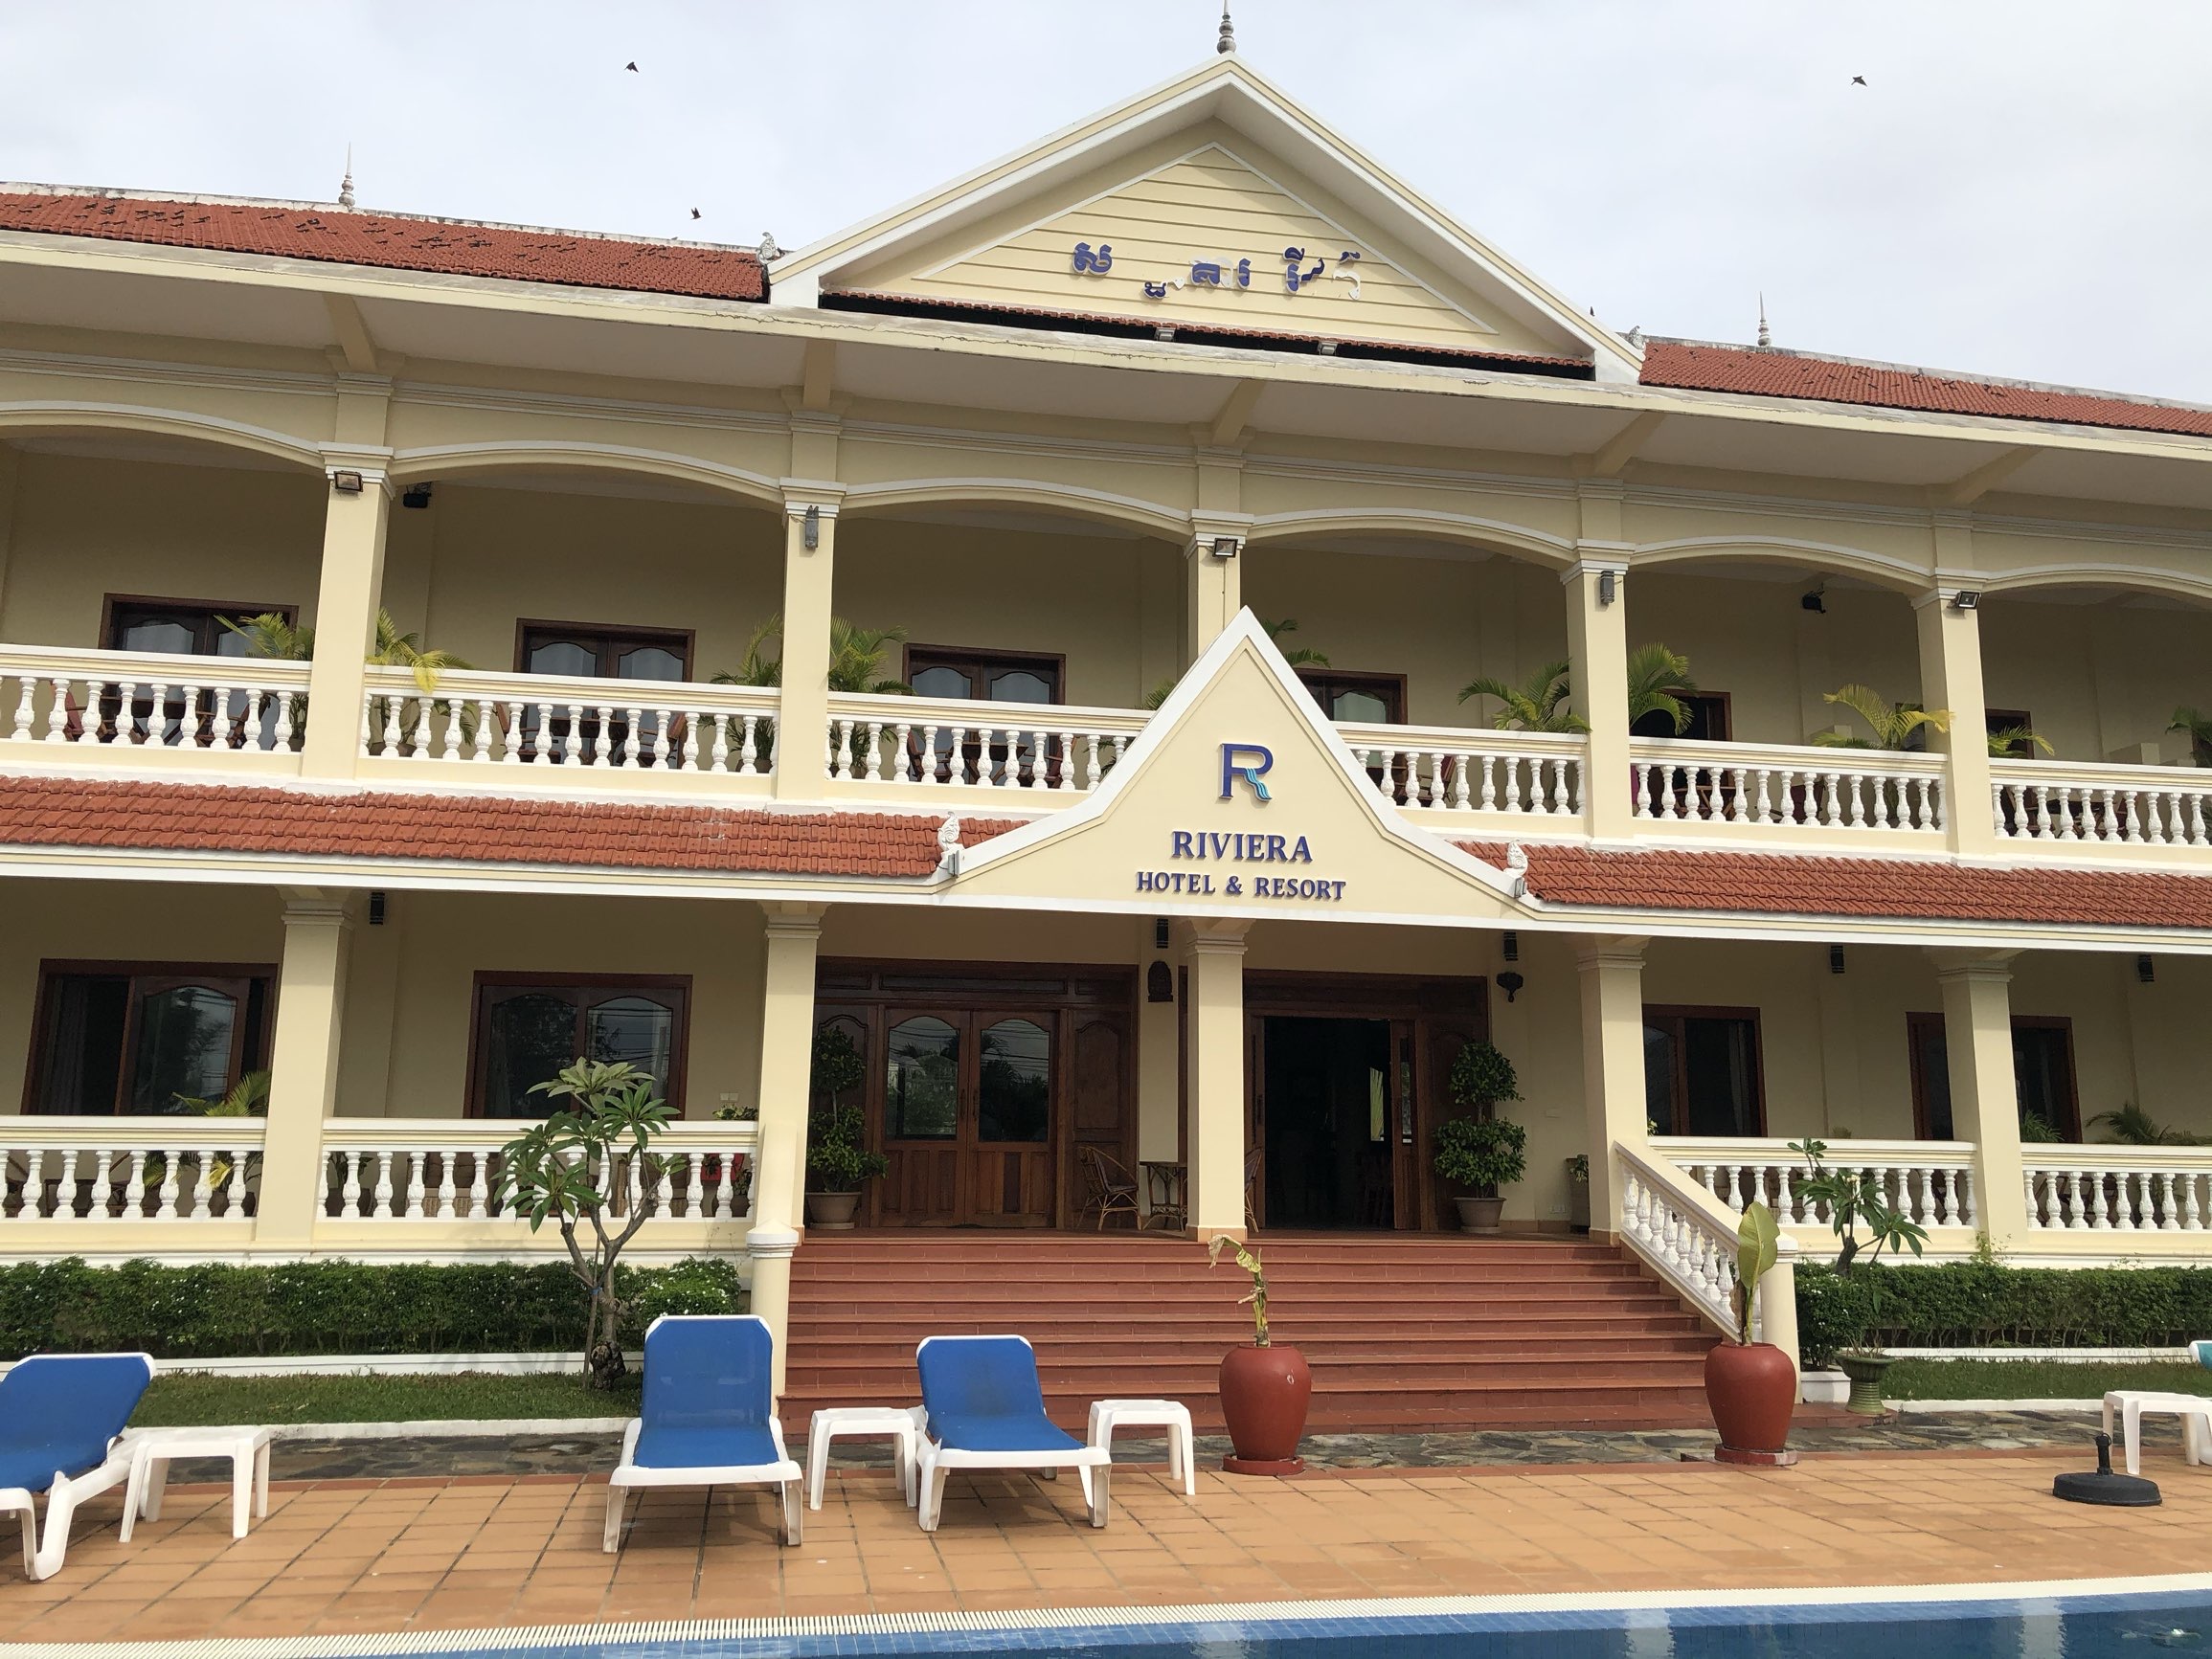 凯帕海滨别墅酒店(Riviera Hotel & Resort Kep) 来到柬埔寨一定要来奢华旅游